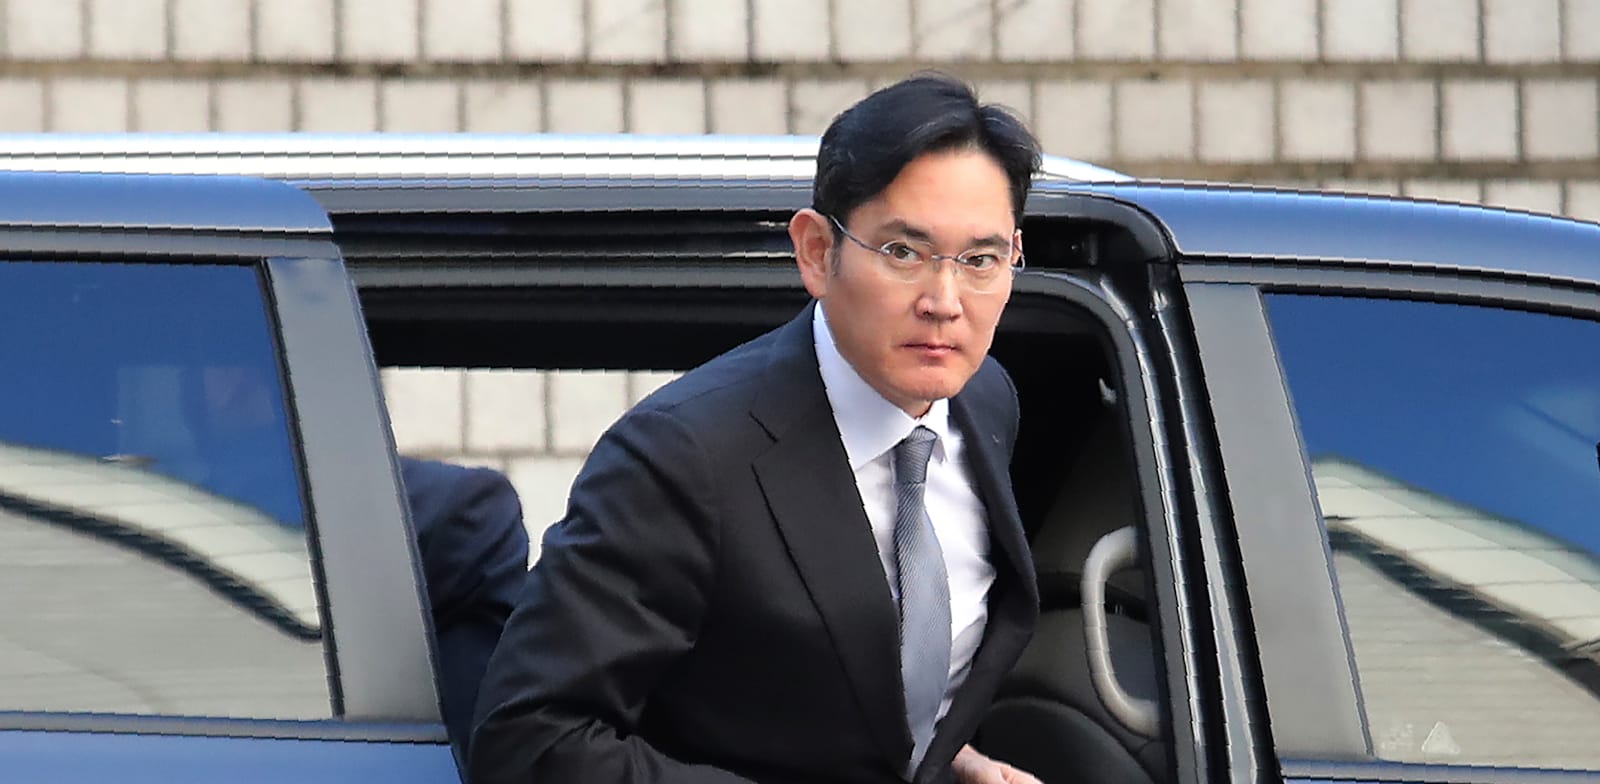 לי ג'יי־יונג, יו''ר סמסונג, מגיע לבית המשפט בסיאול / צילום: ap, Ahn Young-joon